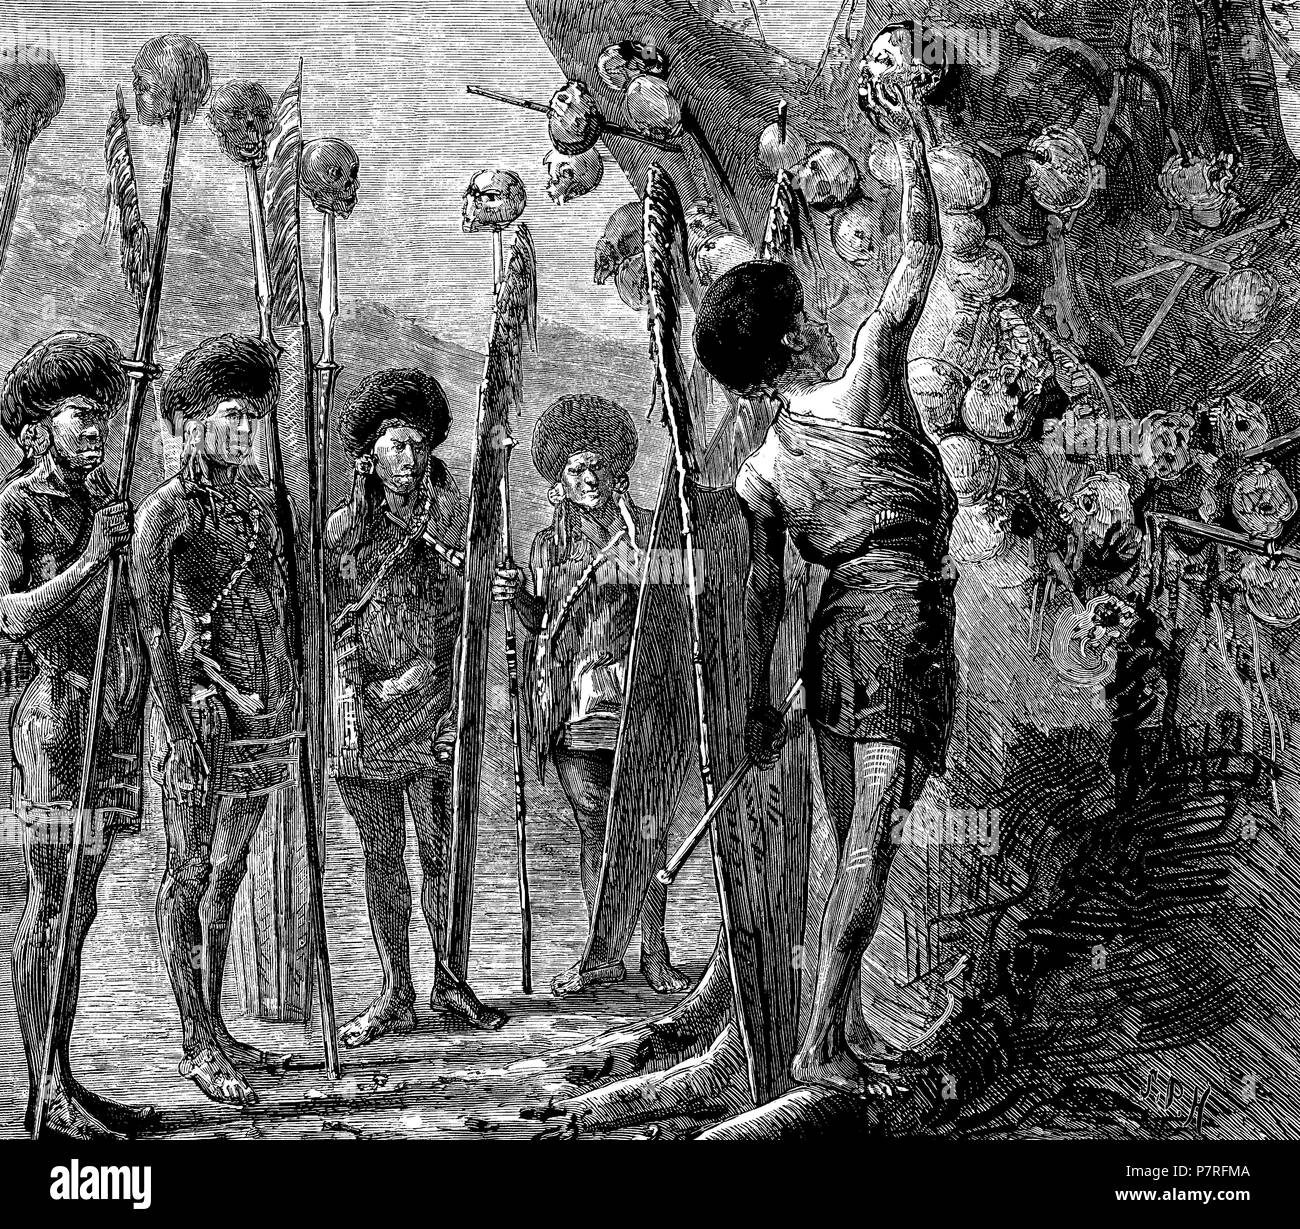 Asia. Birmania. Costumbre salvaje de la tribu de los Nagas, habitantes de Assan. Cabezas decapitadas por los guerreros jóvenes con las que adornan un corpulento árbol. Grabado de 1879. Stock Photo